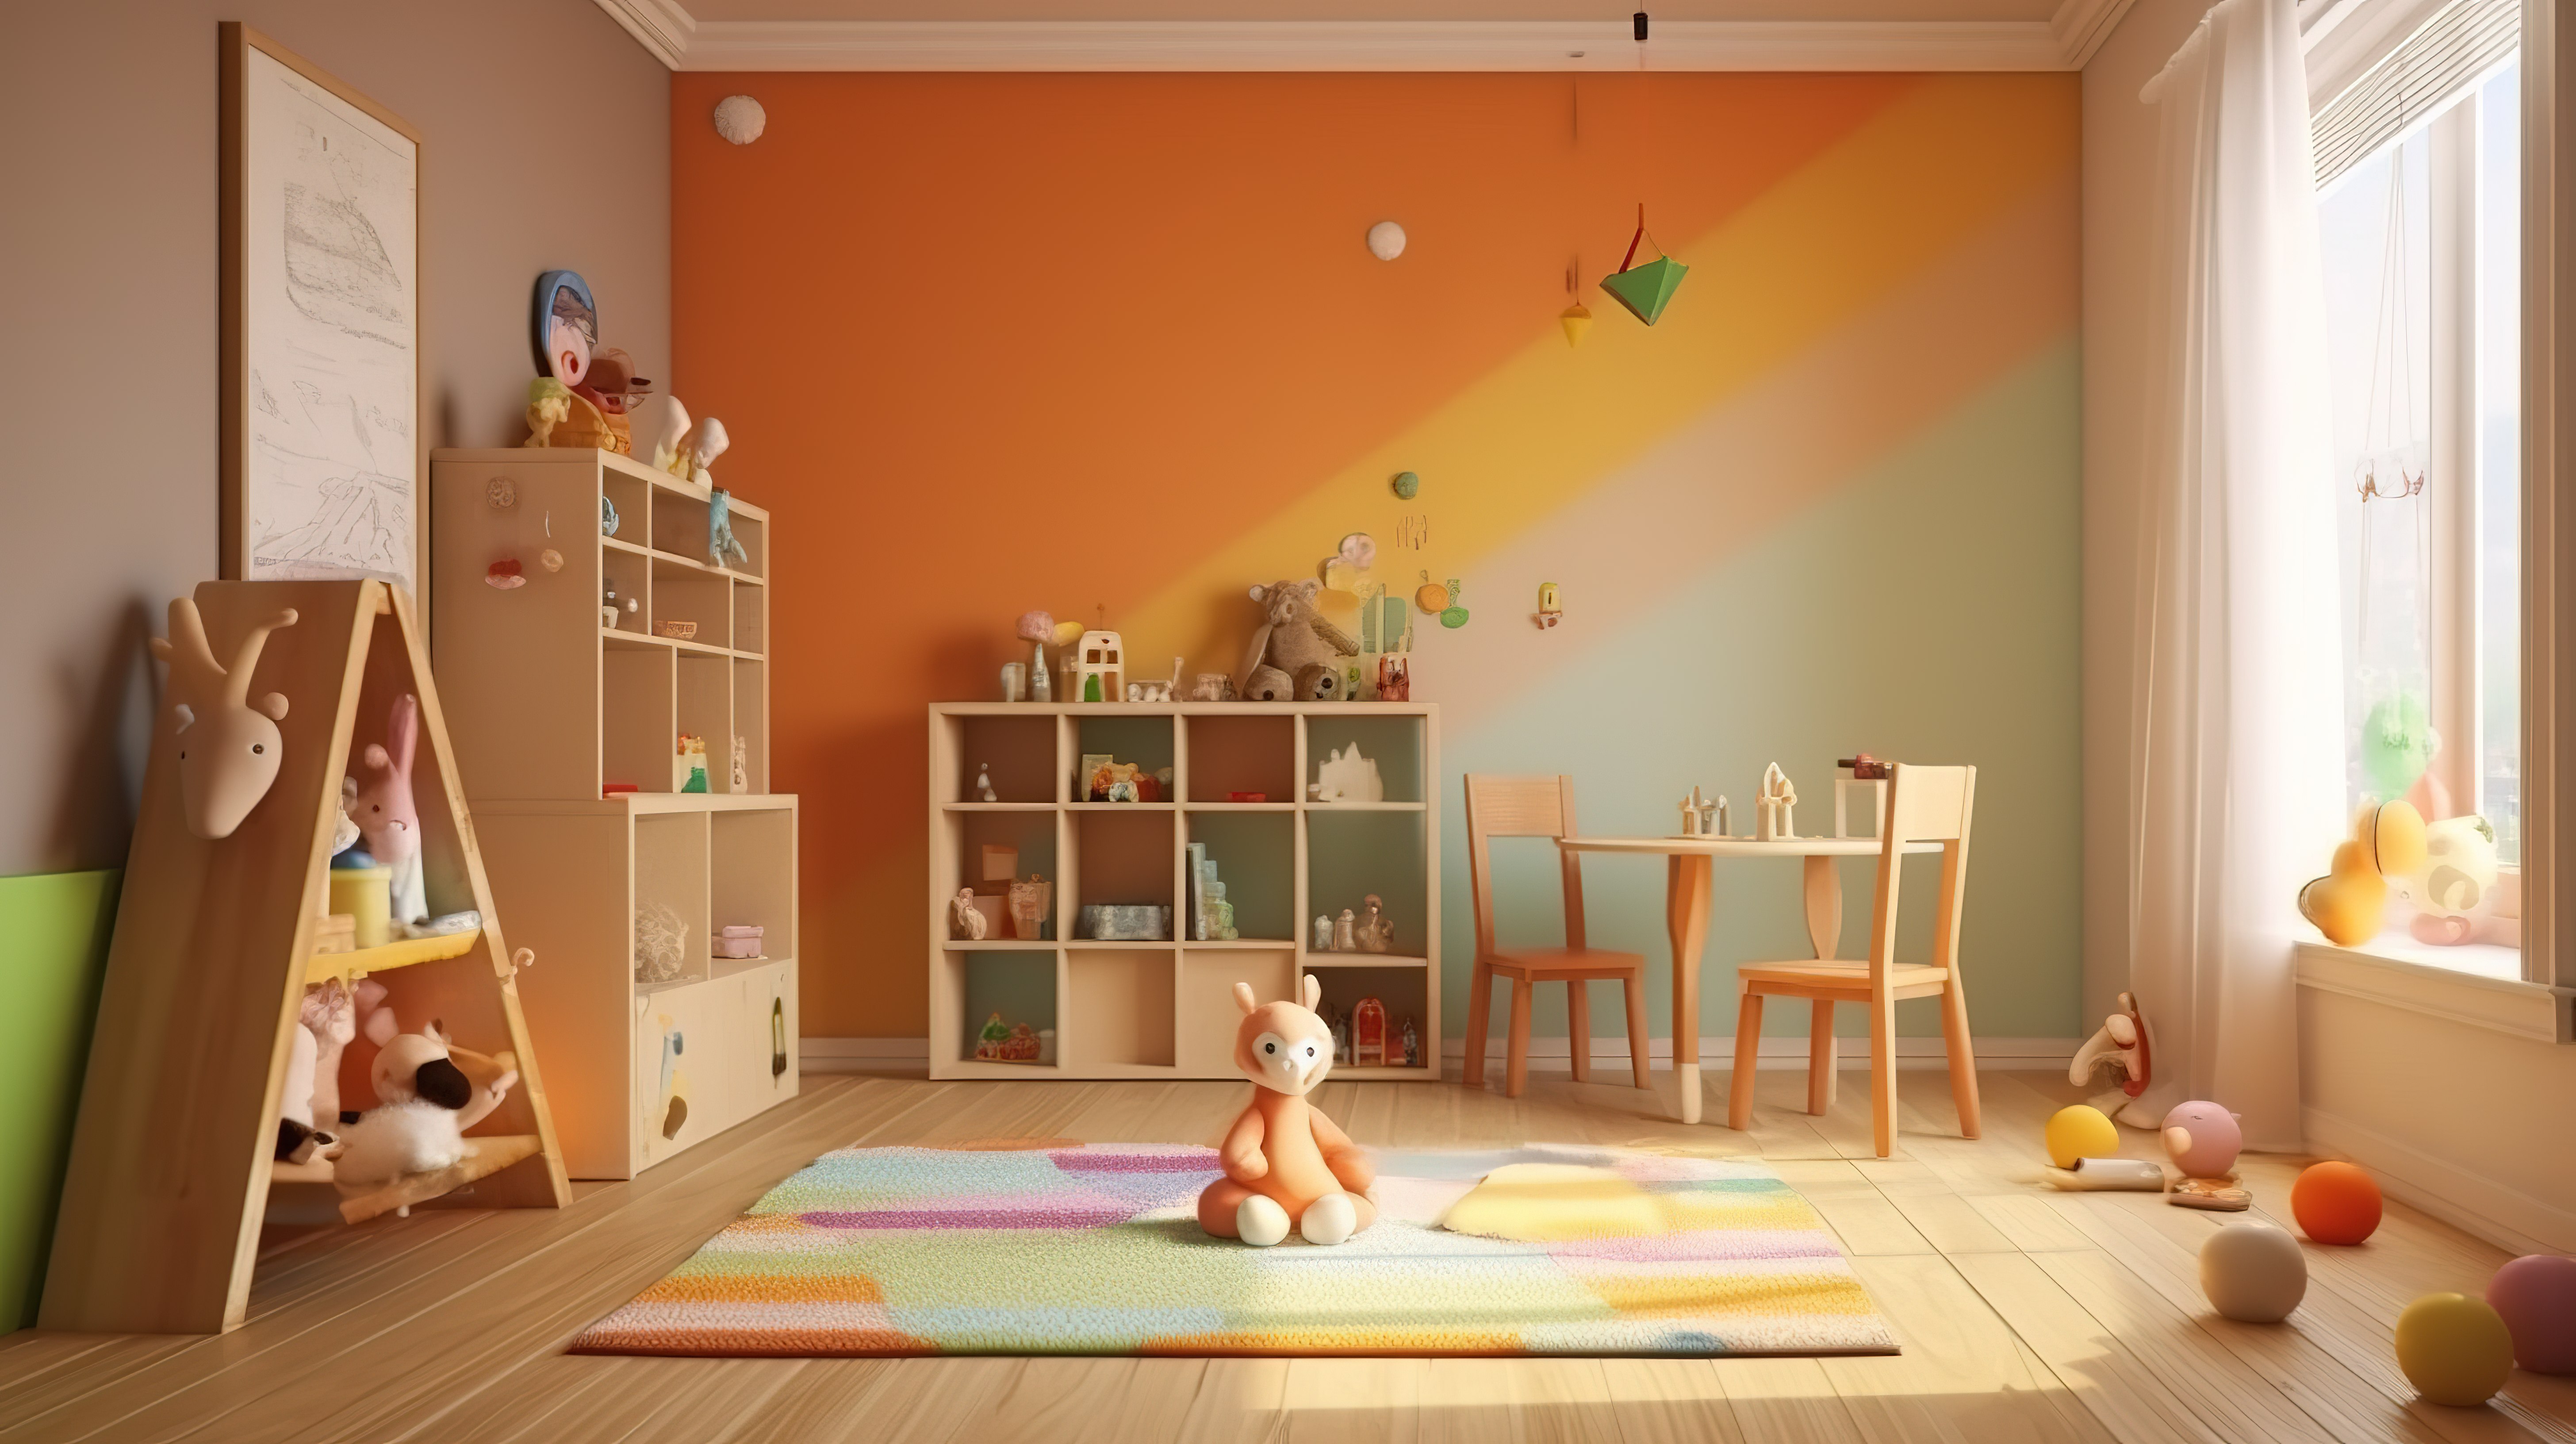 家庭或托儿所环境中儿童房间的 3D 渲染图片